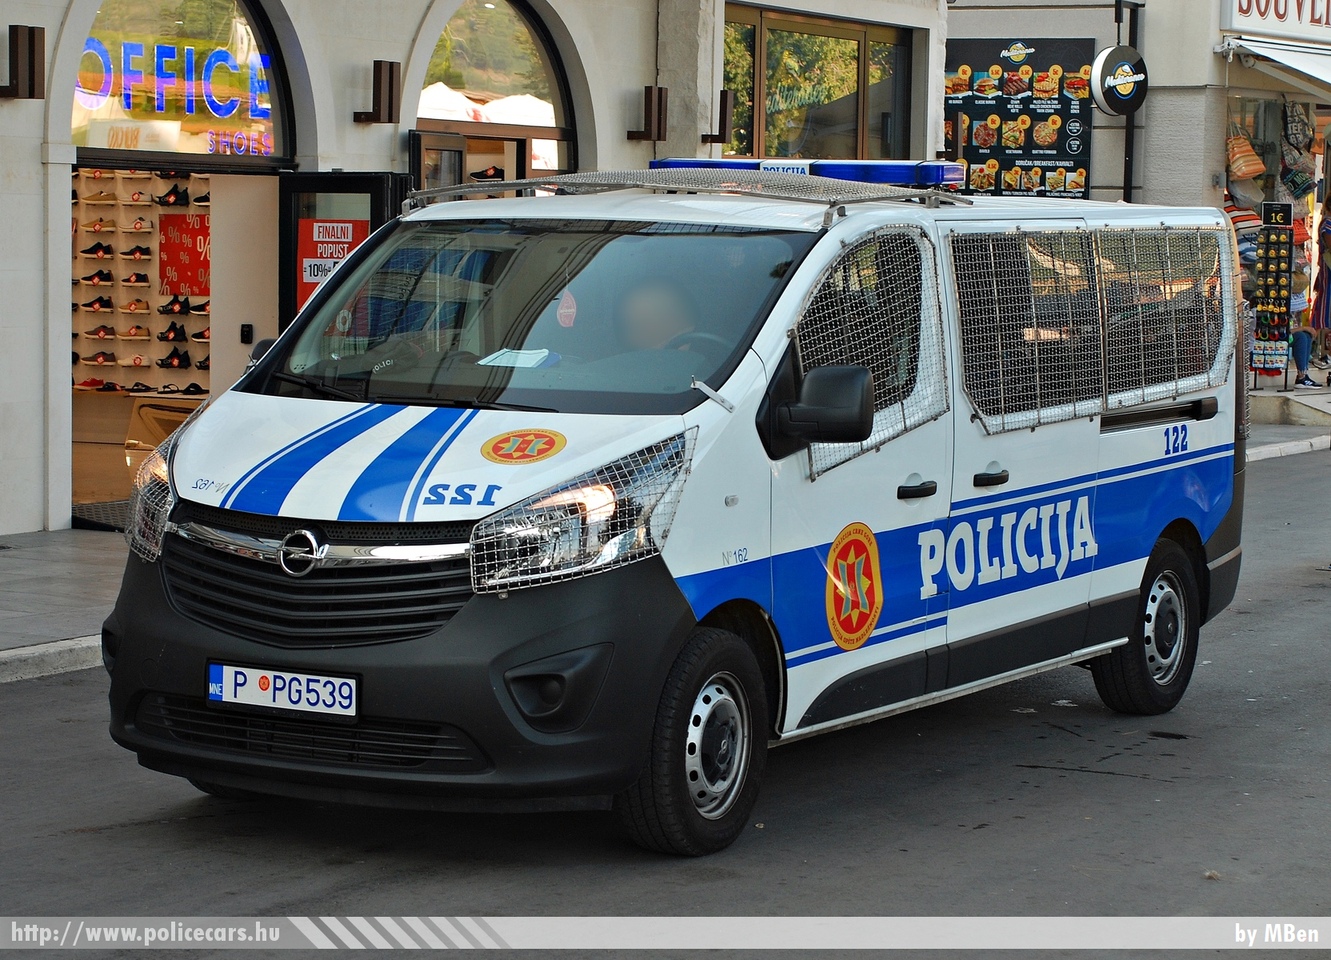 Opel Vivaro, fotó: MBen
Keywords: rendőr rendőrautó rendőrség montenegrói Montenegró Crna Gora police policecar